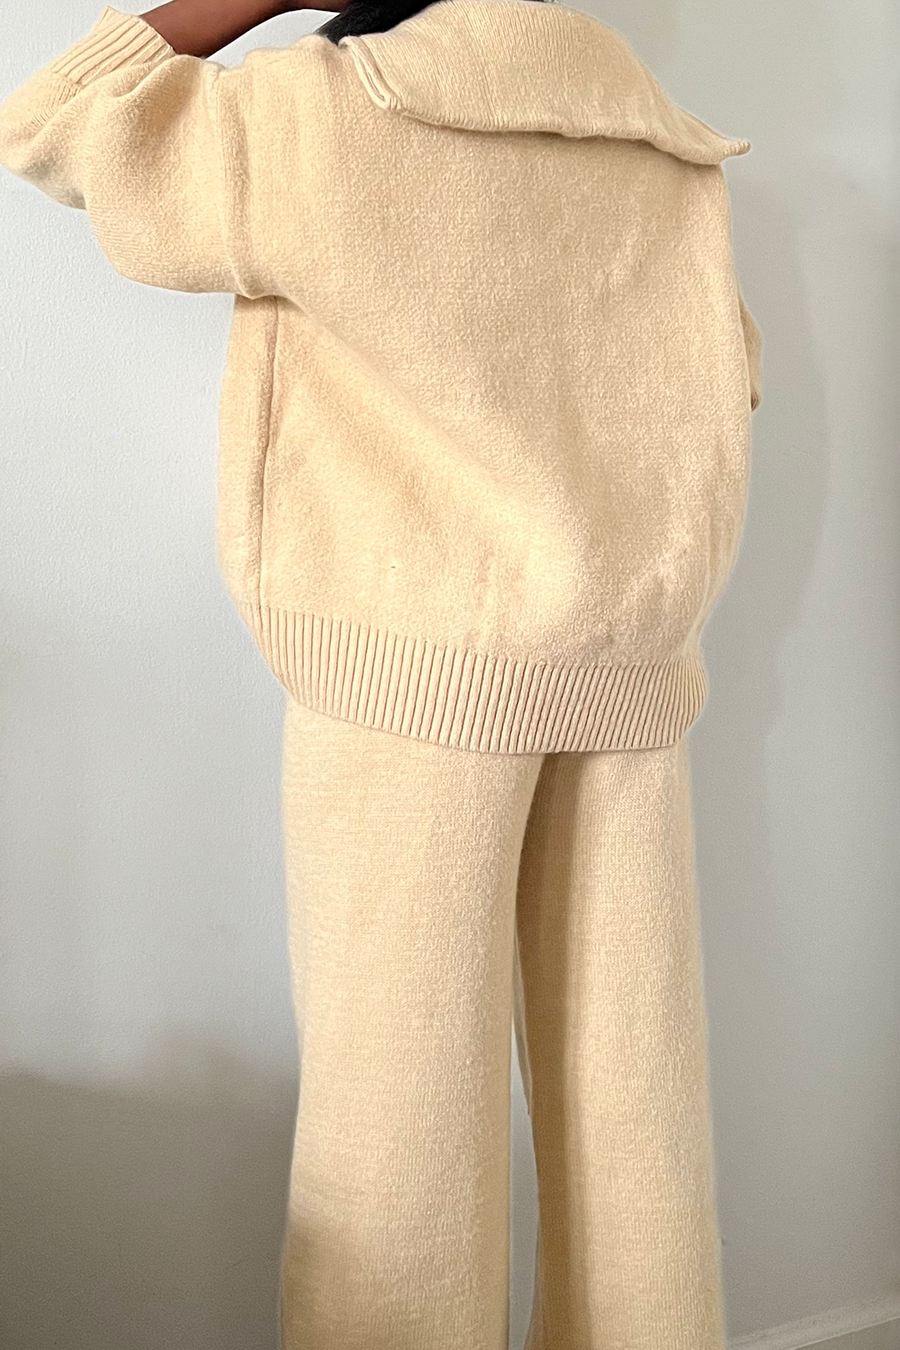 sand tan knitwear zip up top and pant set